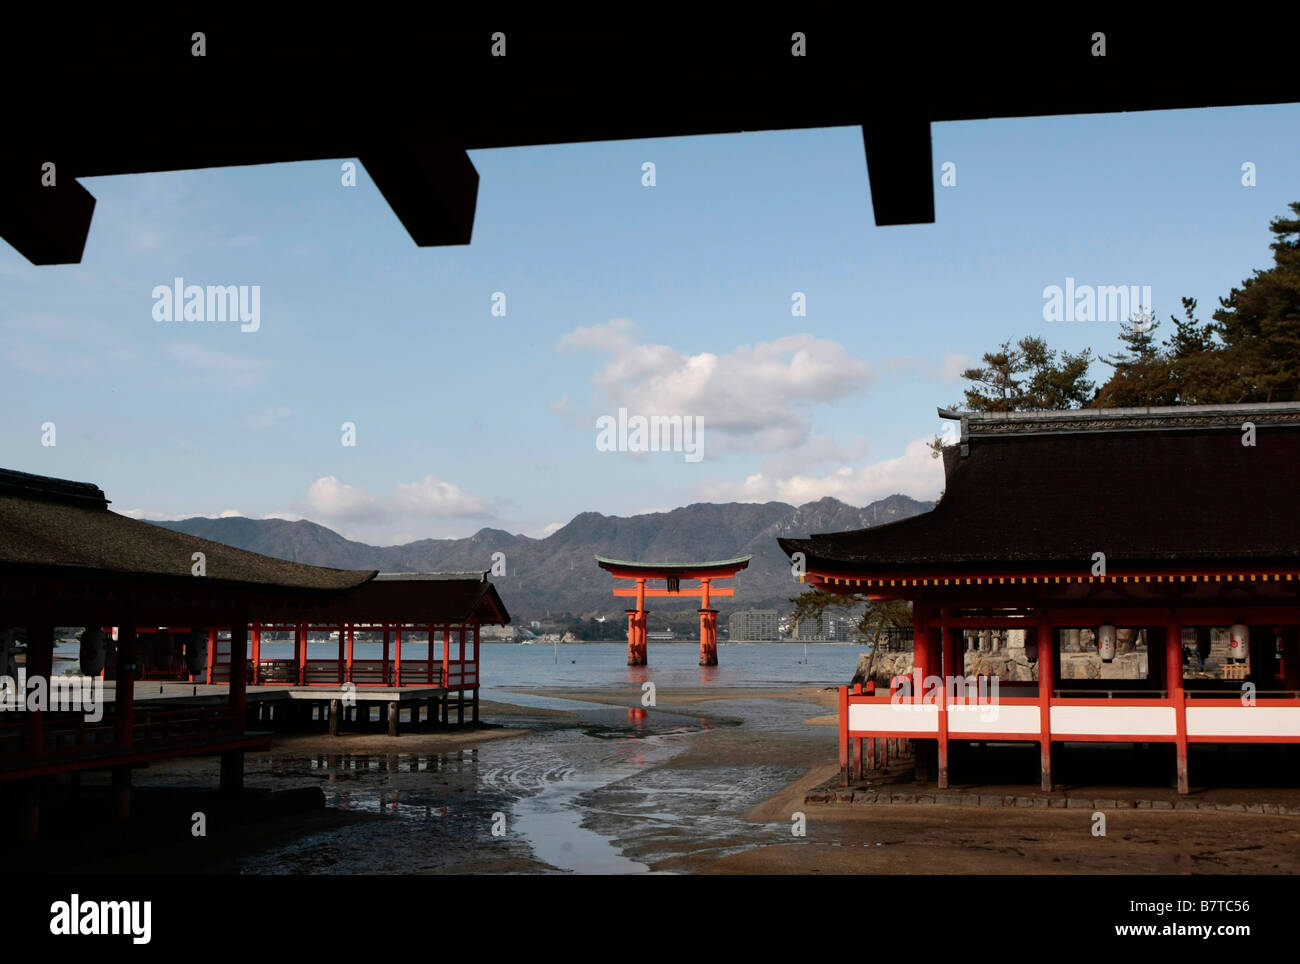 The Floating Torii Gate at Itsukushima Shrine on Miyajima Island, Japan. Stock Photo